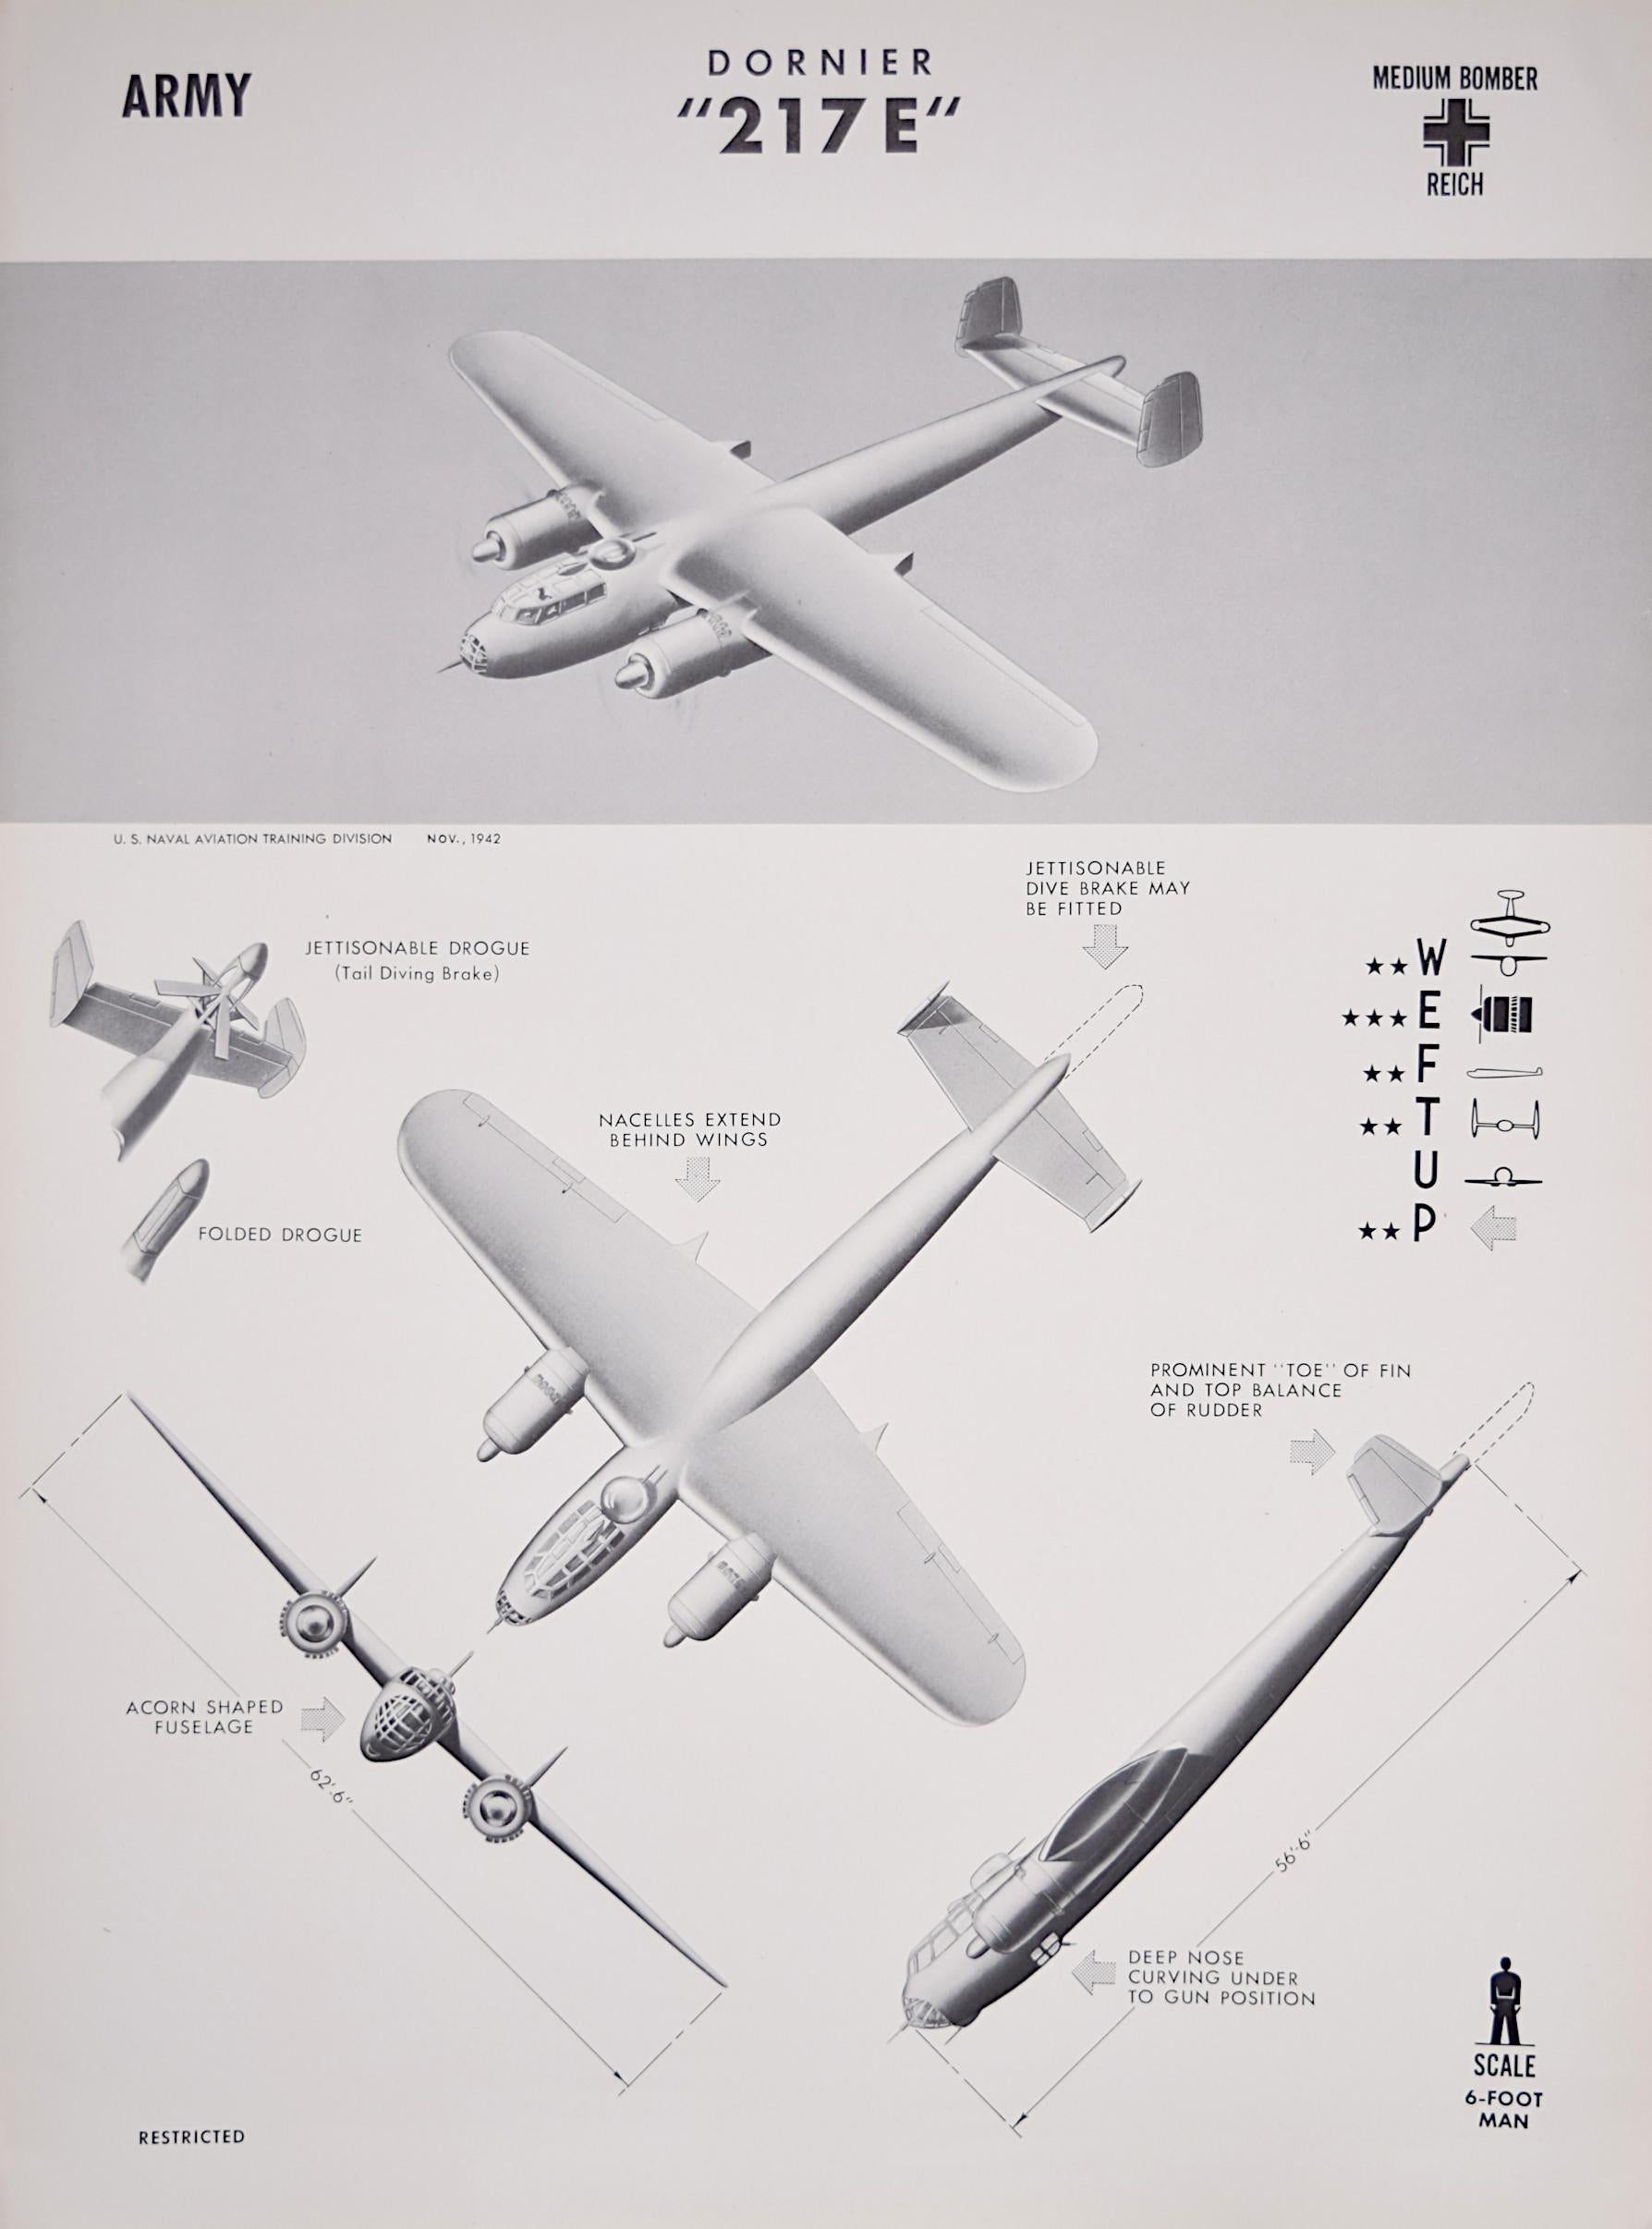 Affiche de reconnaissance d'avions américains Luftwaffe de 1943 Dornier Do 217 datant de la Seconde Guerre mondiale, reconnaissance des avions